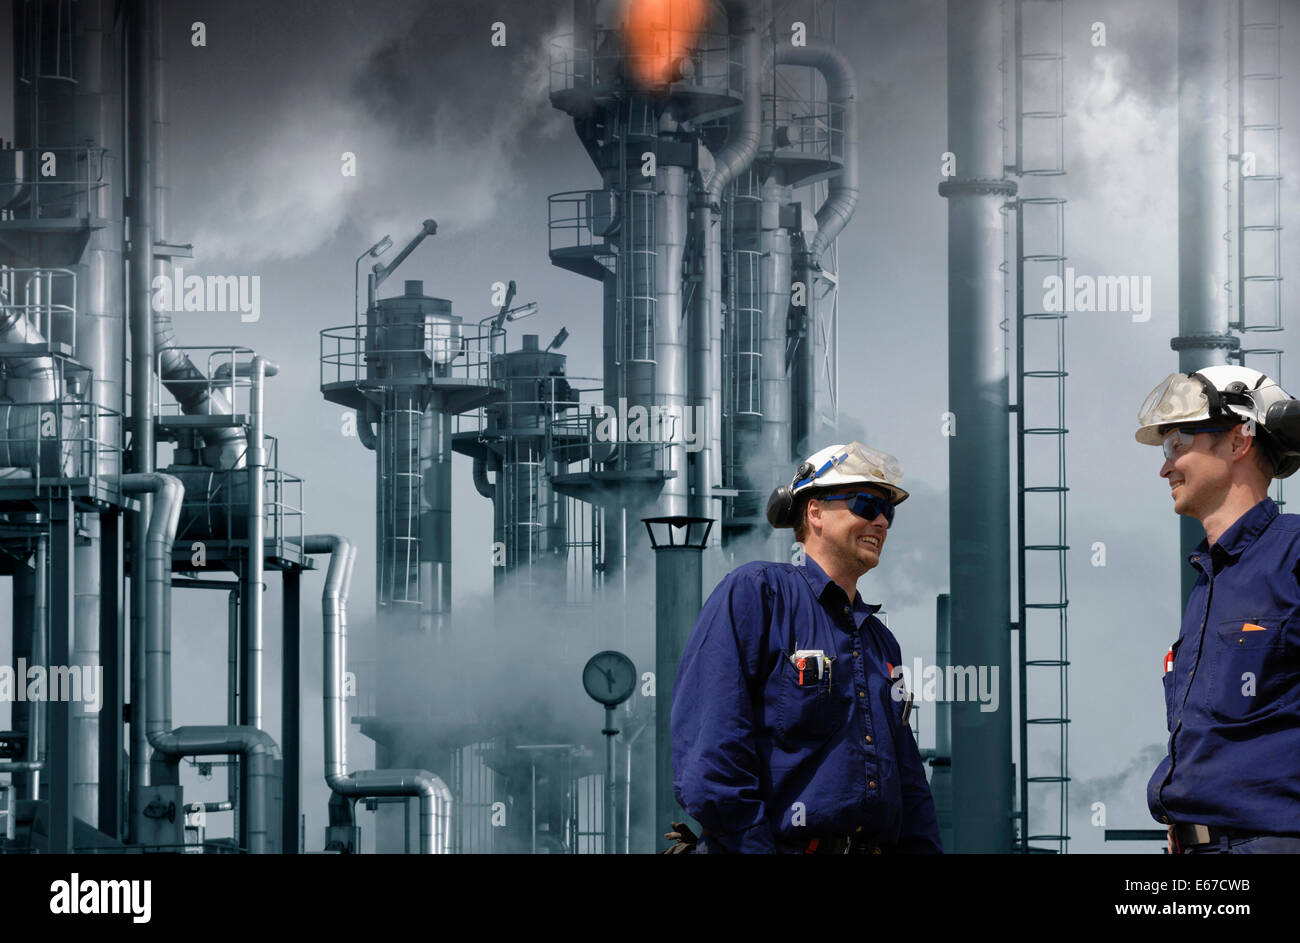 Raffinerie de pétrole et des travailleurs, les flammes et les incendies géants Banque D'Images